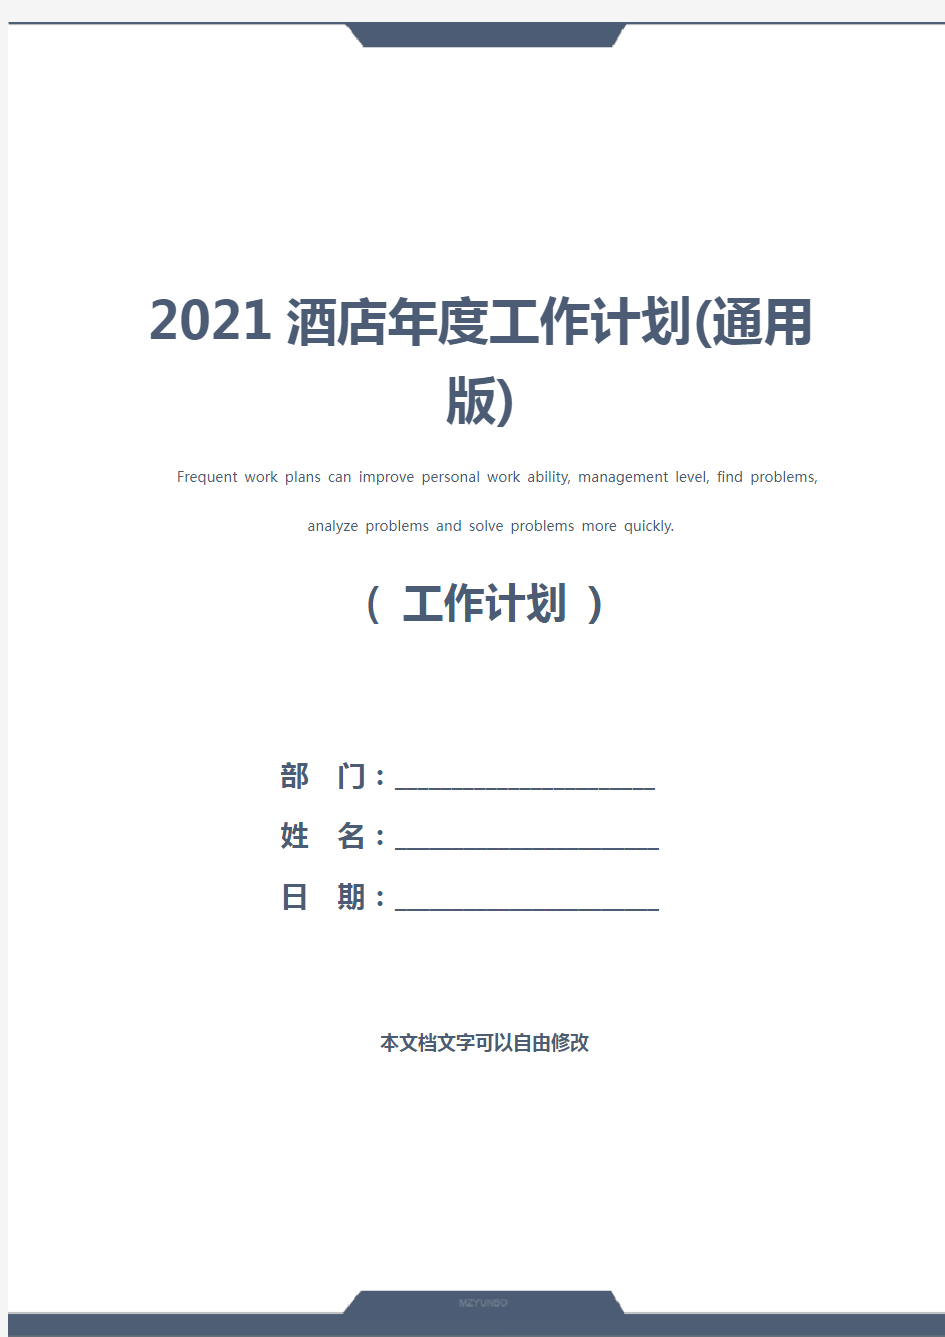 2021酒店年度工作计划(通用版)